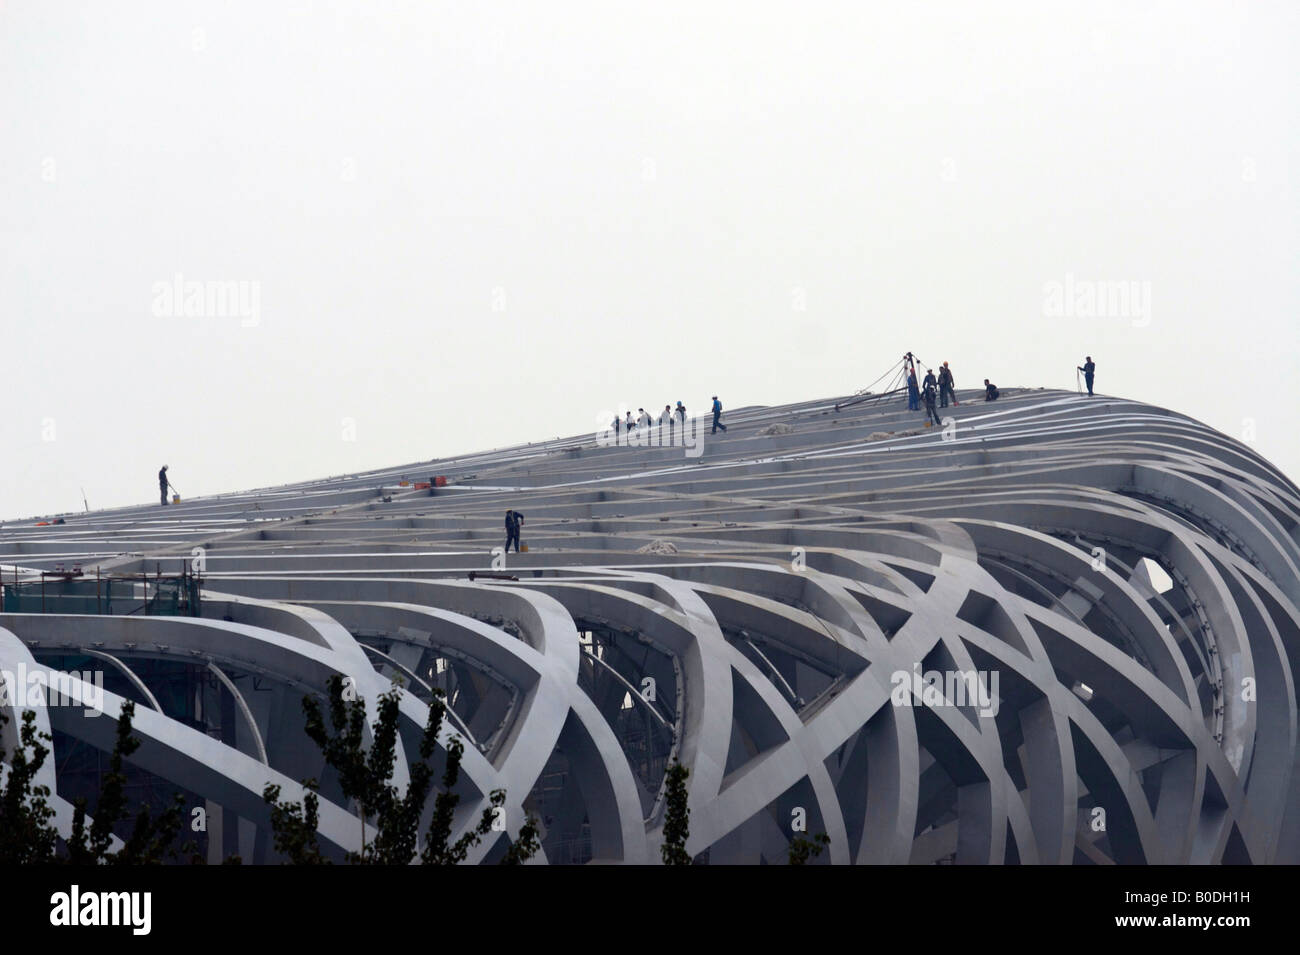 La construction de l'oiseau national ou s nest stadium Beijing Chine Banque D'Images